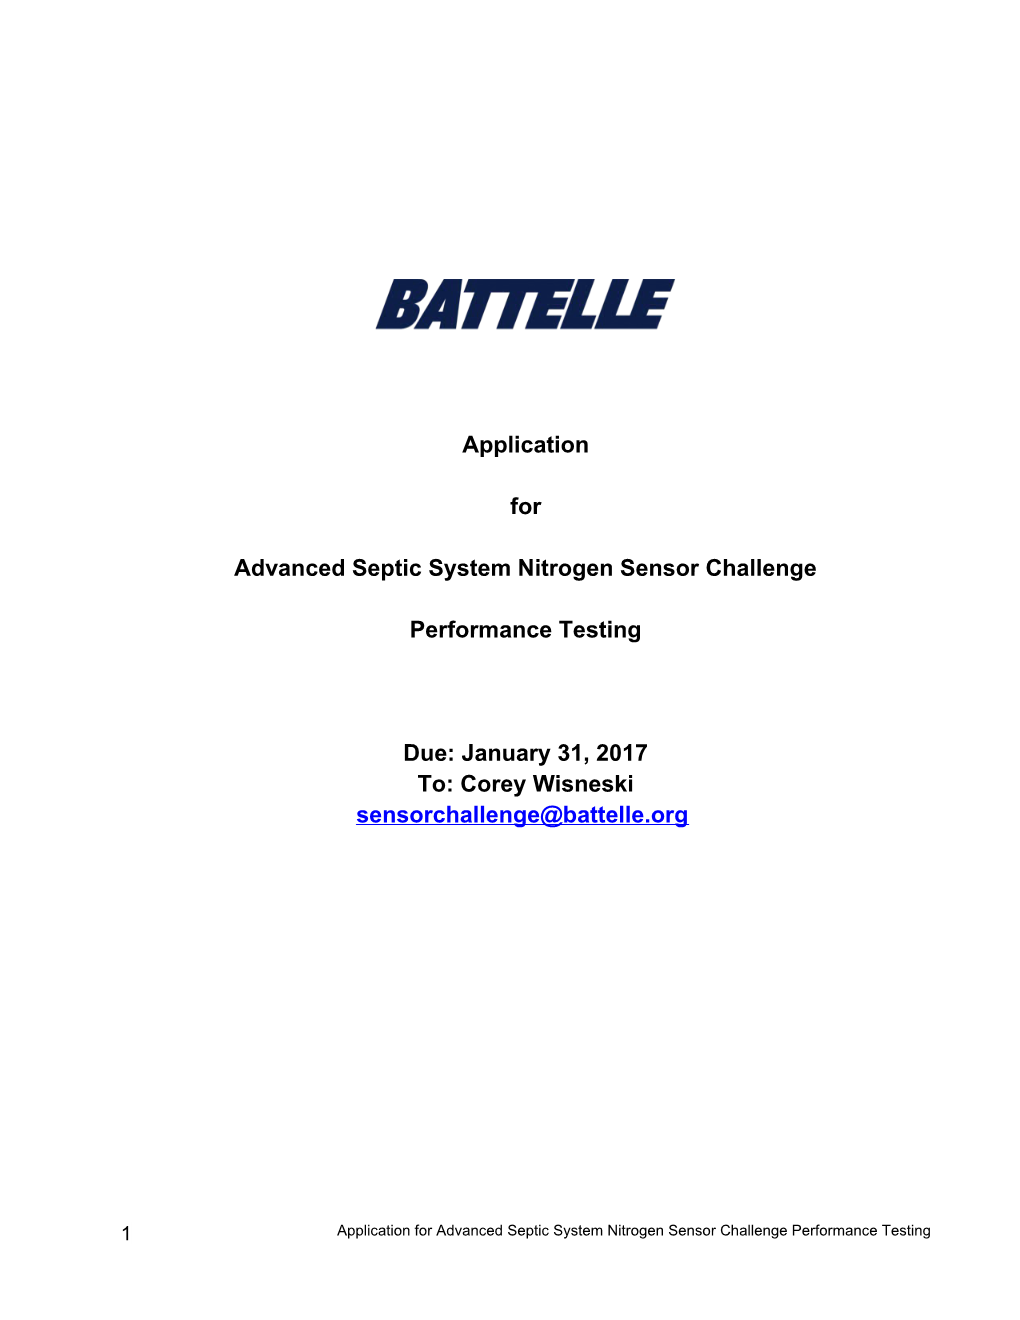 Battelle Performance Testing Application